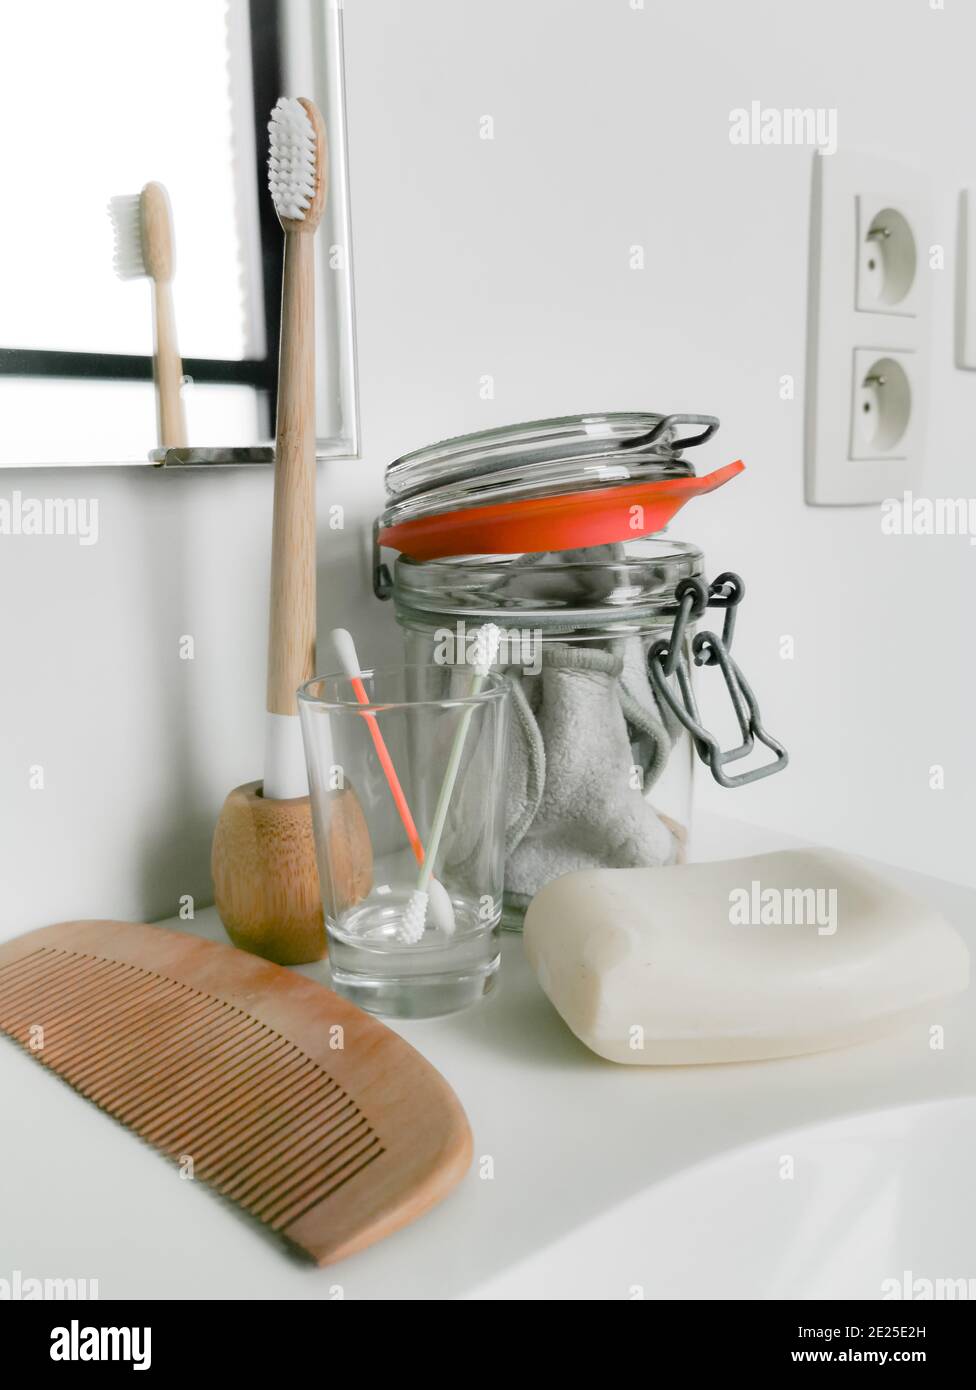 Concept de salle de bain zéro déchet avec des produits sans plastique et réutilisables tels que des cotons-tiges en silicone et une brosse à dents en bambou. Style de vie durable. Banque D'Images